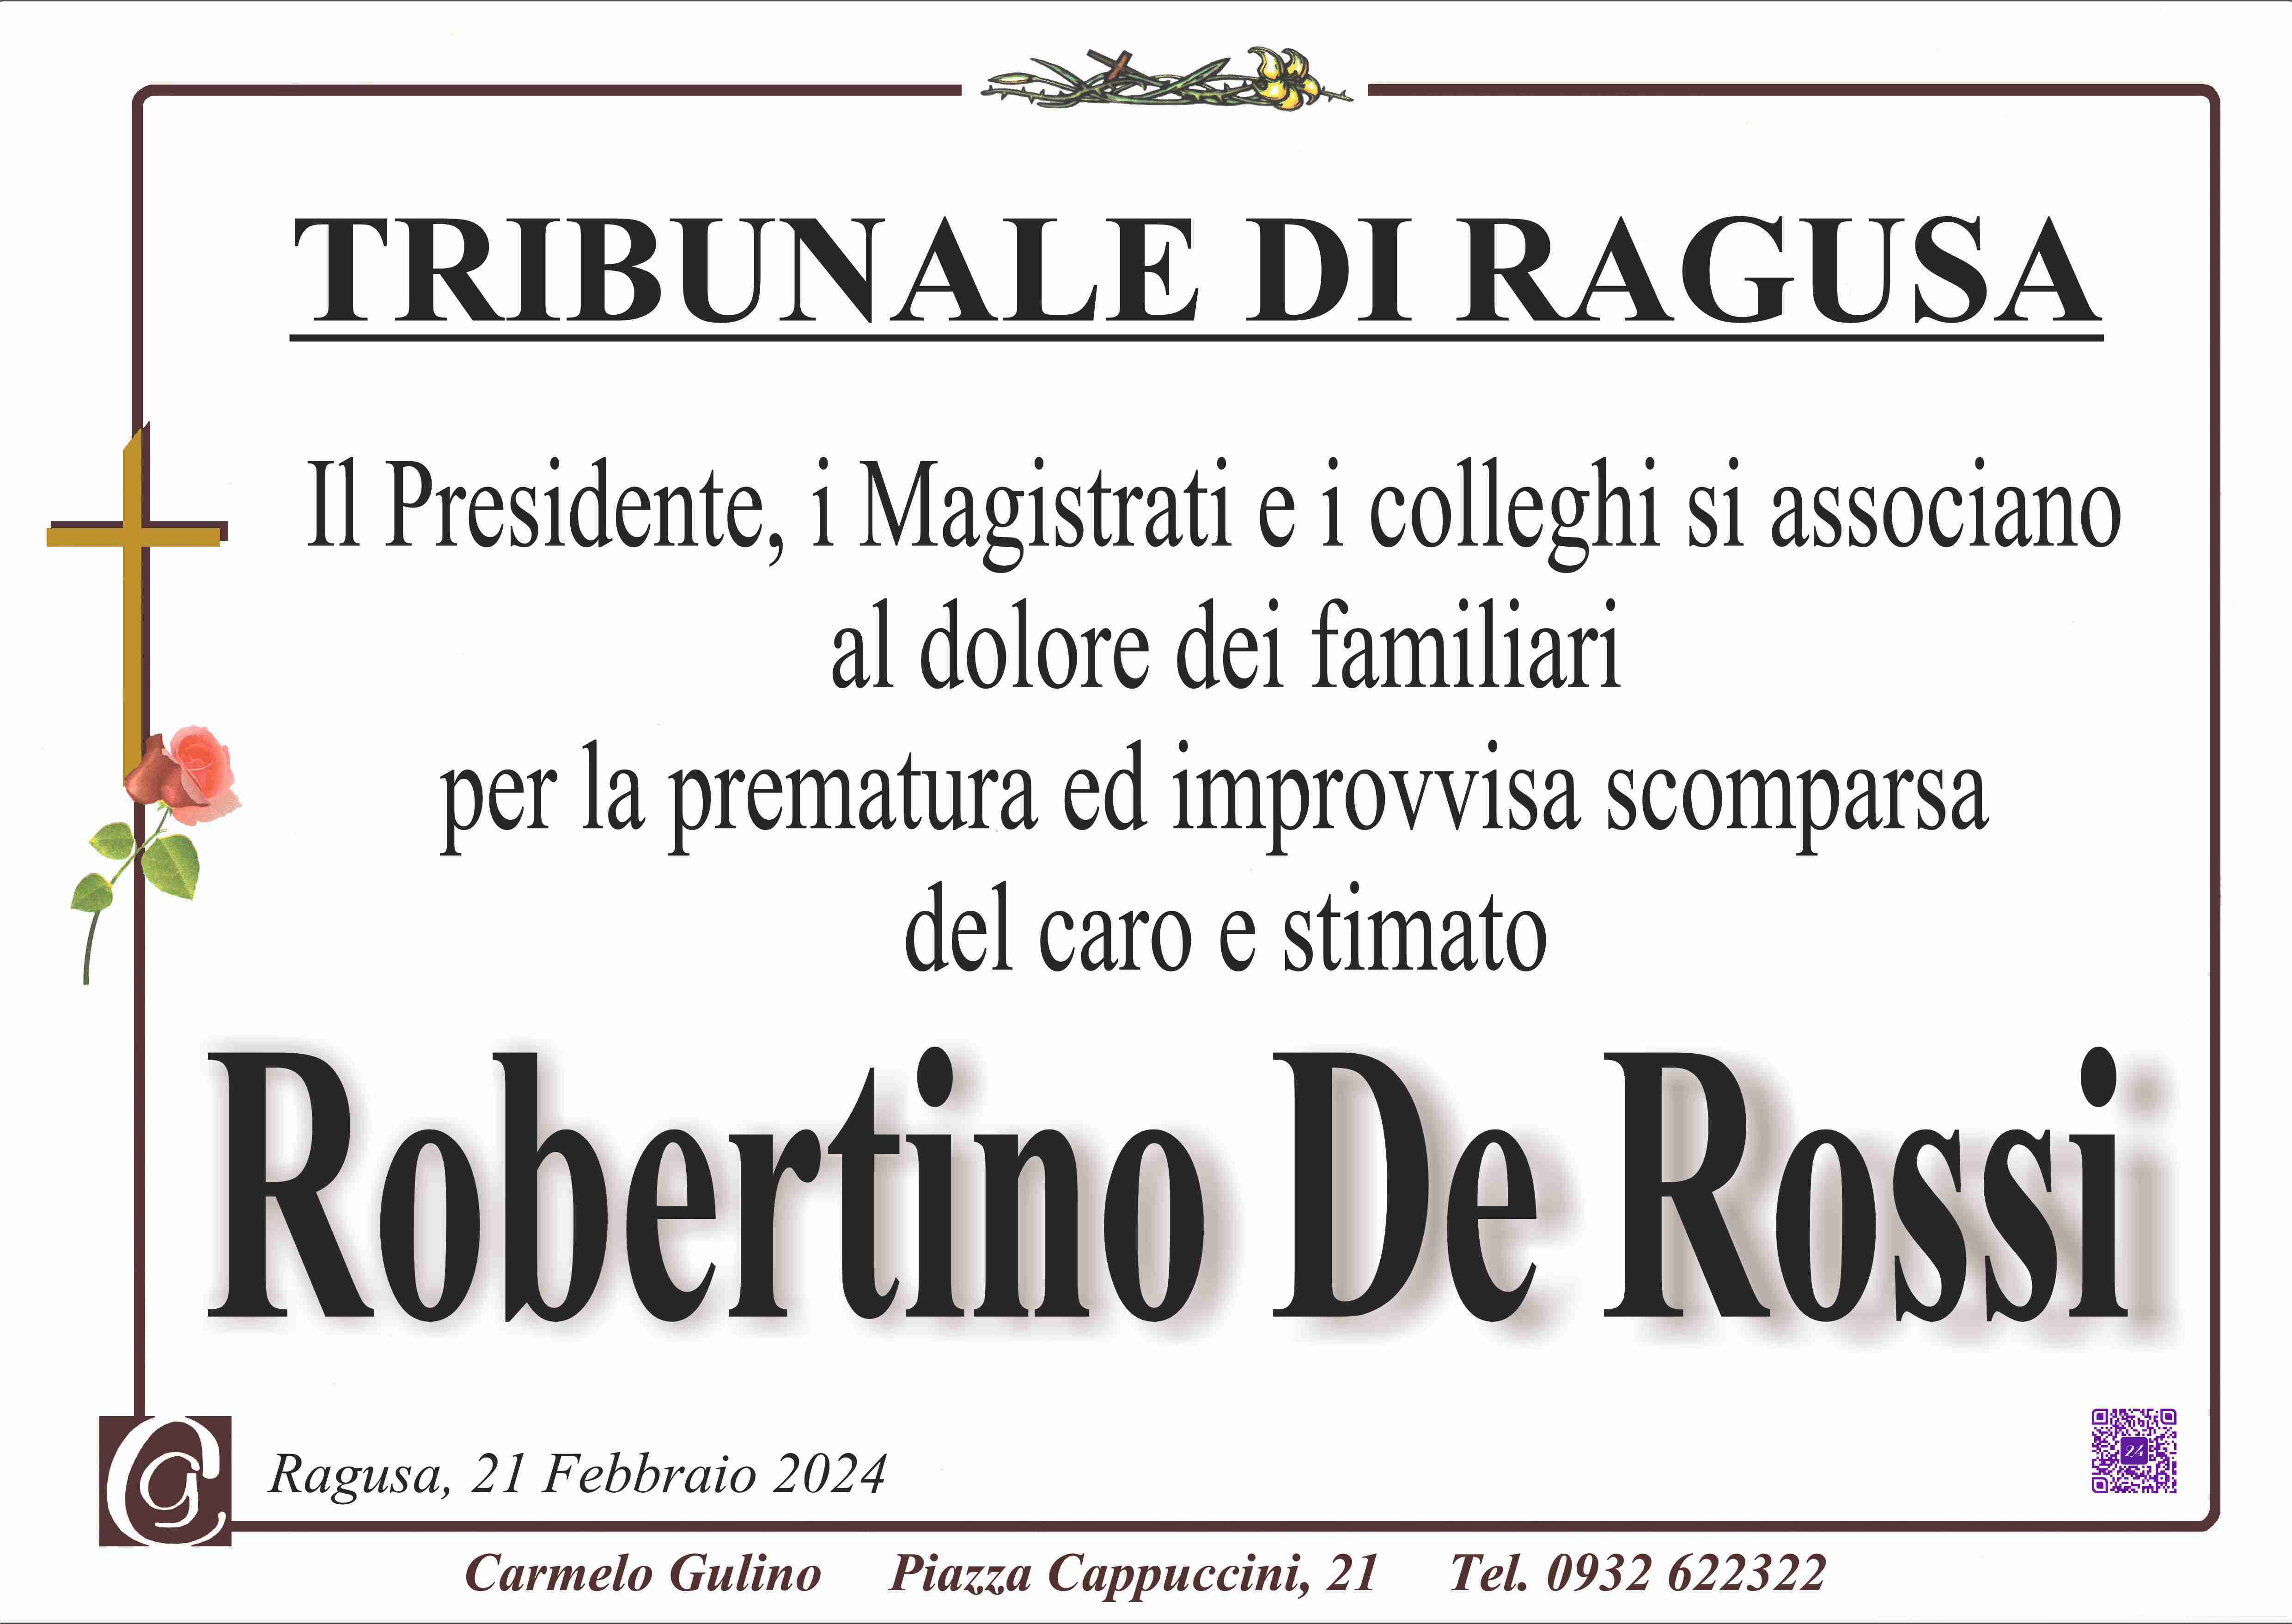 Robertino De Rossi